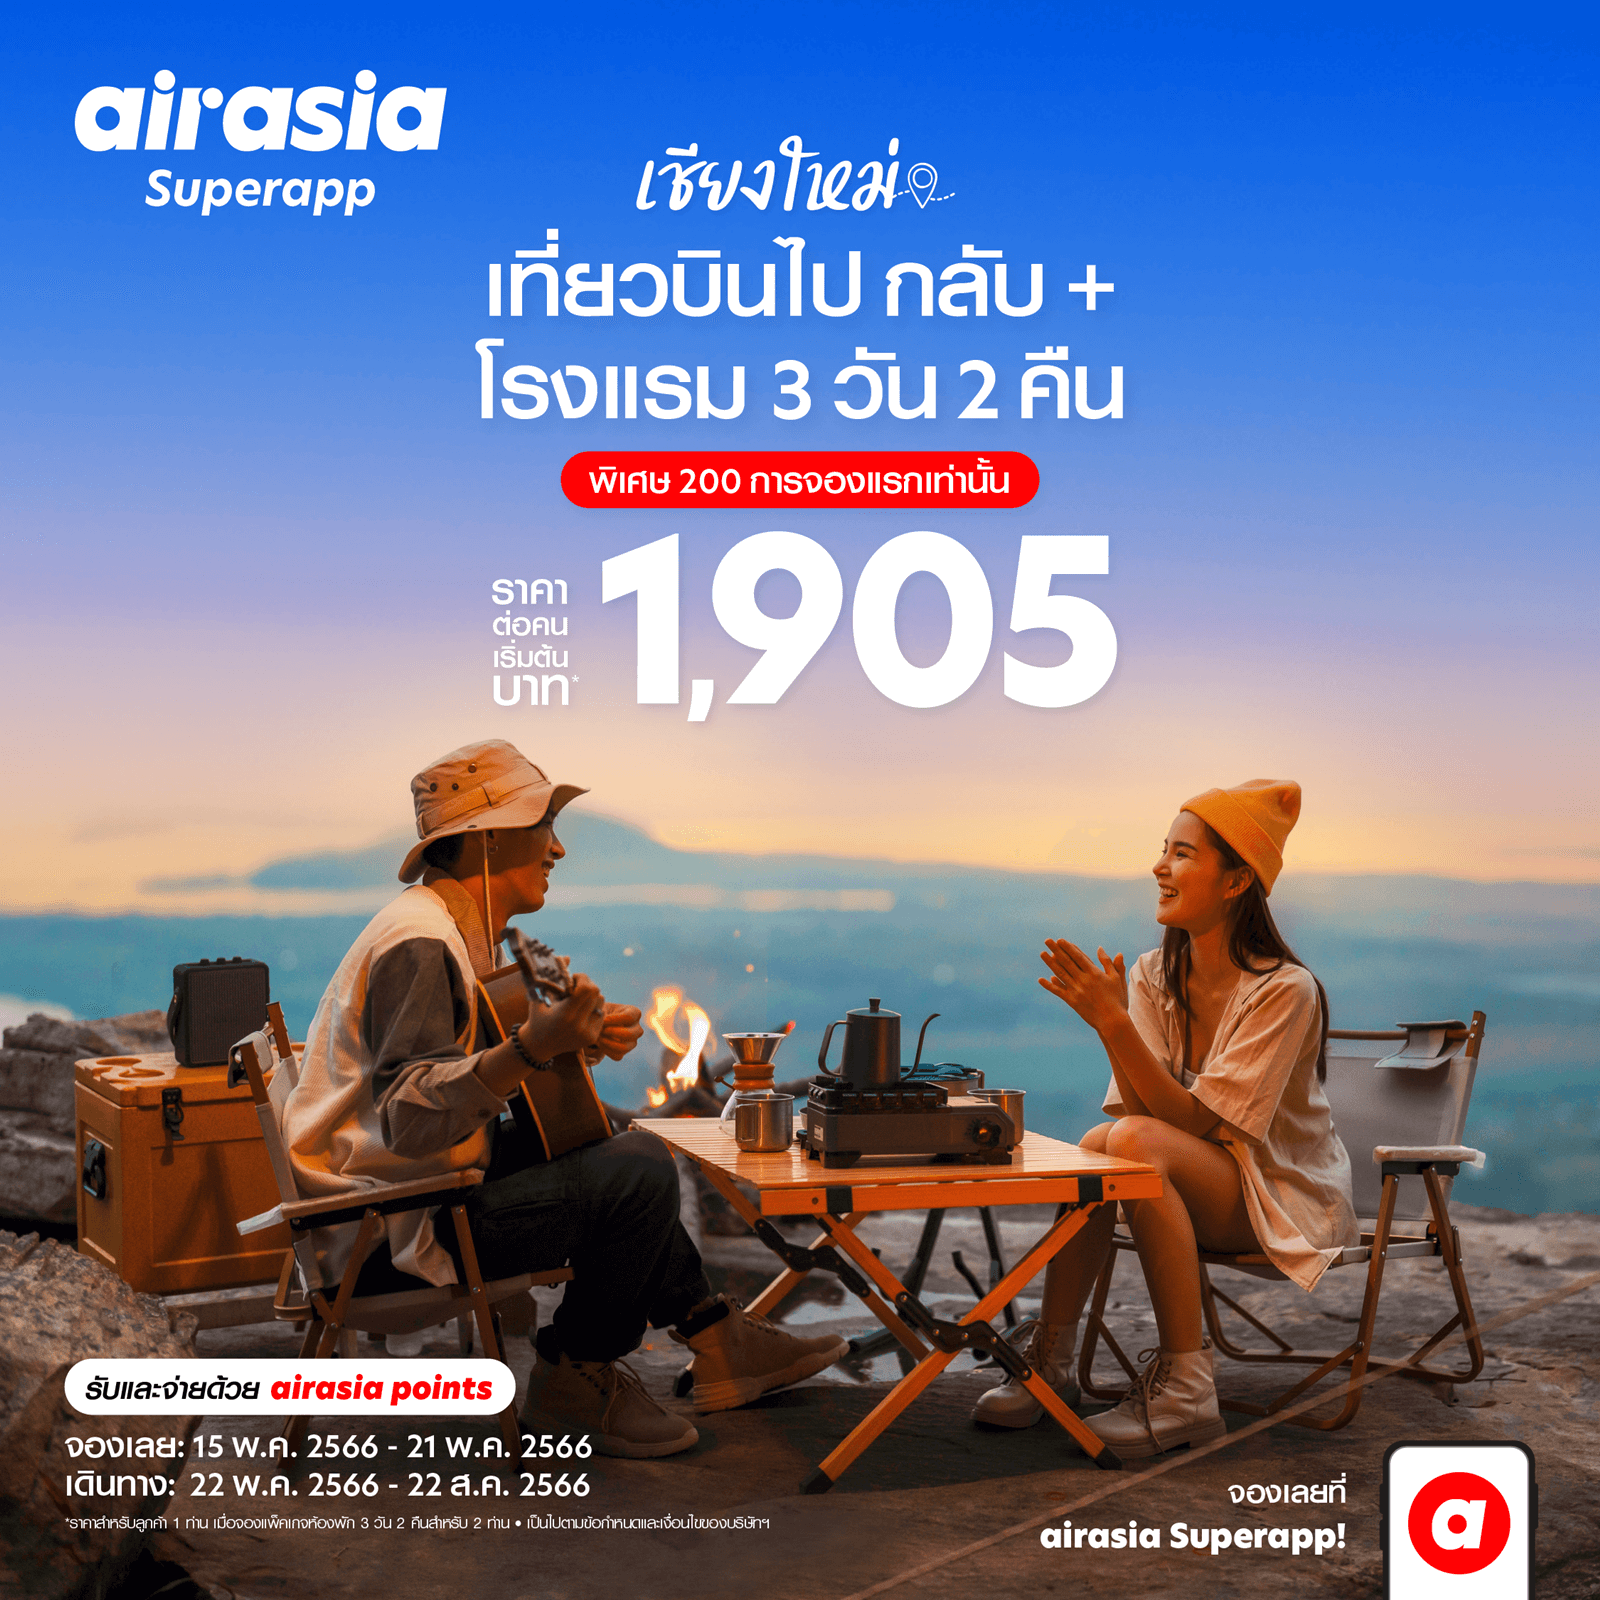 airasia Superapp จัดดีล เที่ยวบินพร้อมที่พัก สุดคุ้ม  เที่ยวเชียงใหม่ 3 วัน 2 คืน เริ่ม 1,905 บาทต่อท่าน!